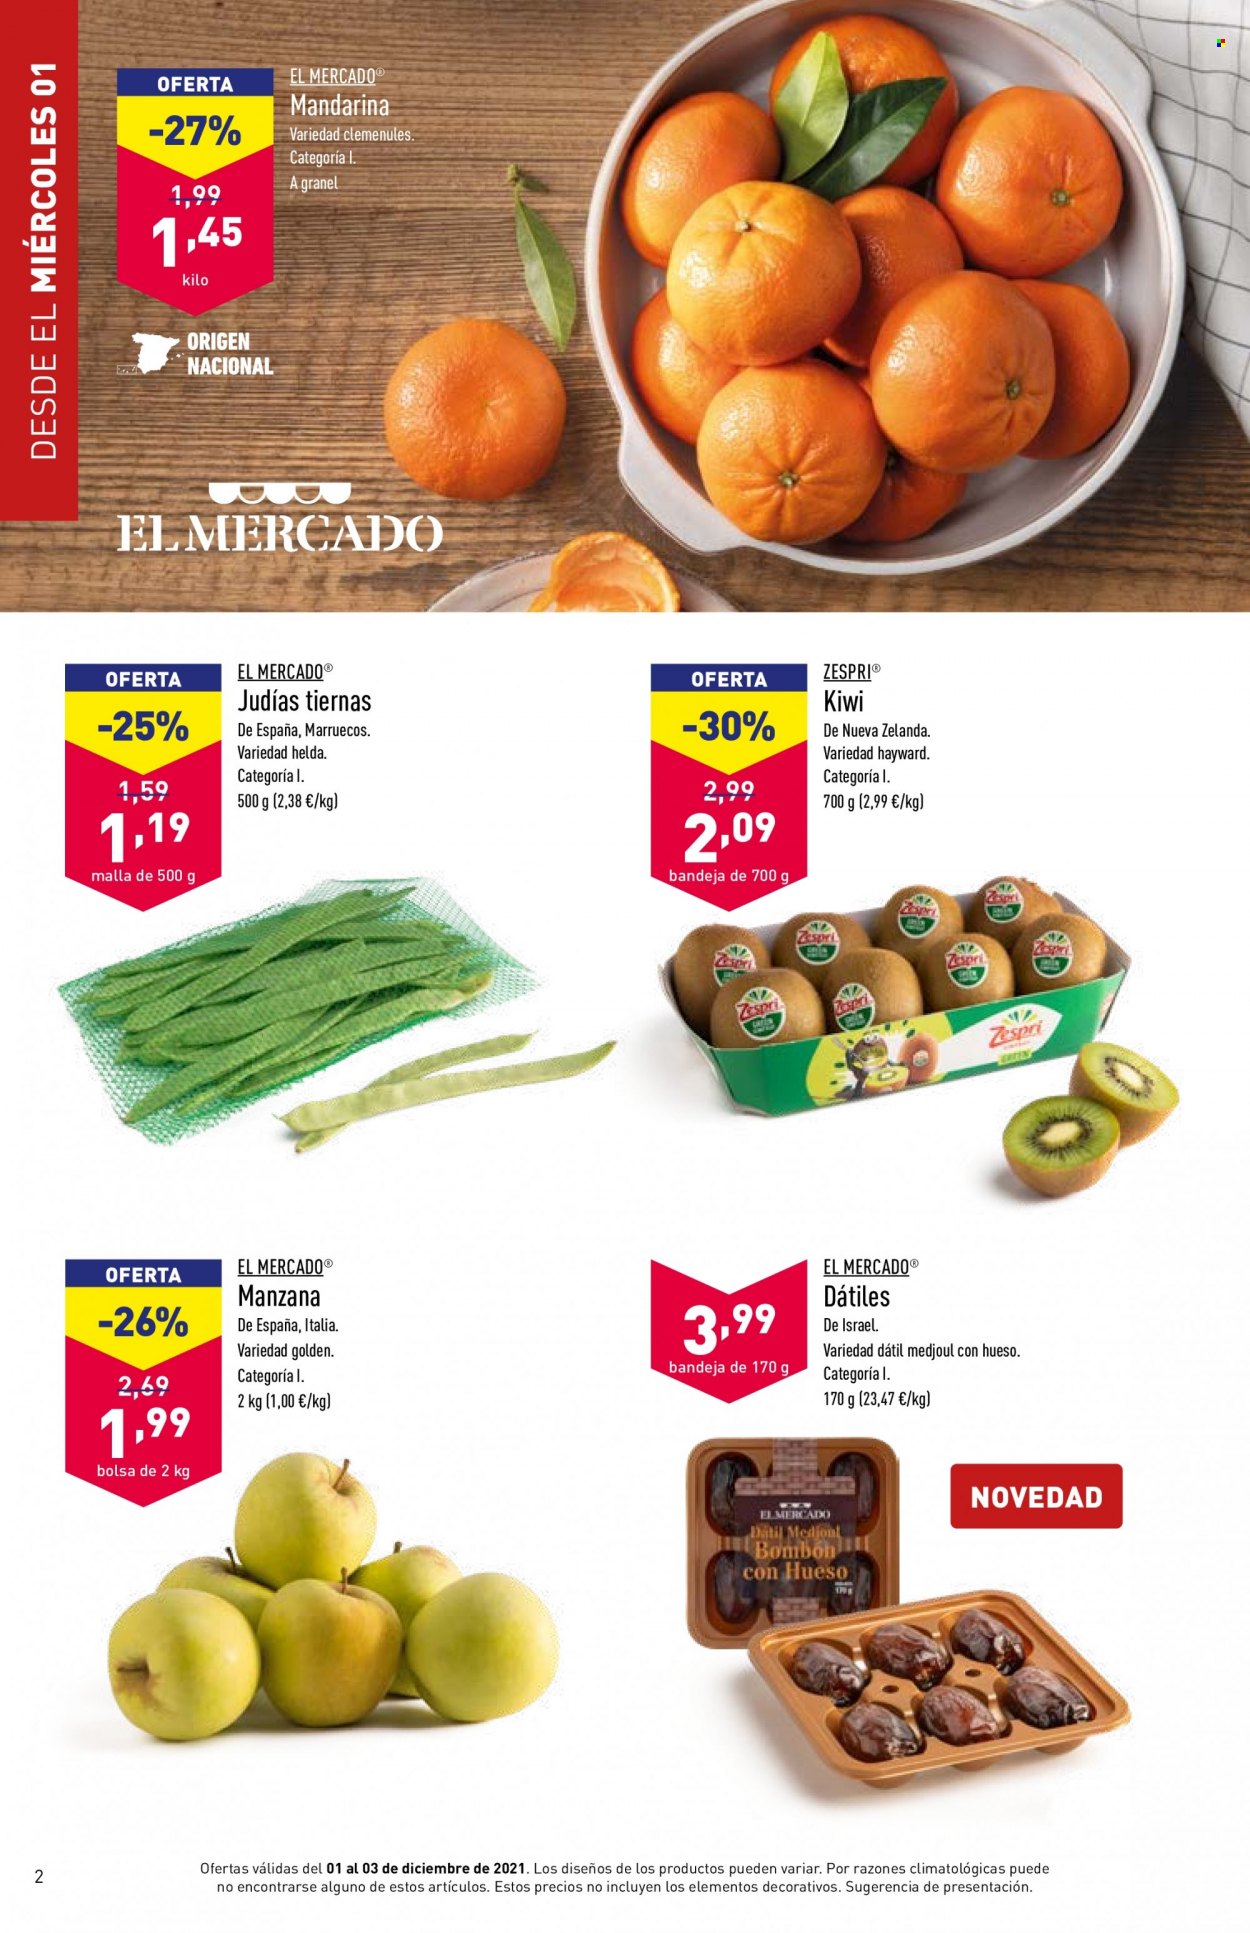 thumbnail - Folleto actual Aldi - 01/12/21 - 07/12/21 - Ventas - kiwi, mandarina, manzanas, dátiles, judías, bolso. Página 2.